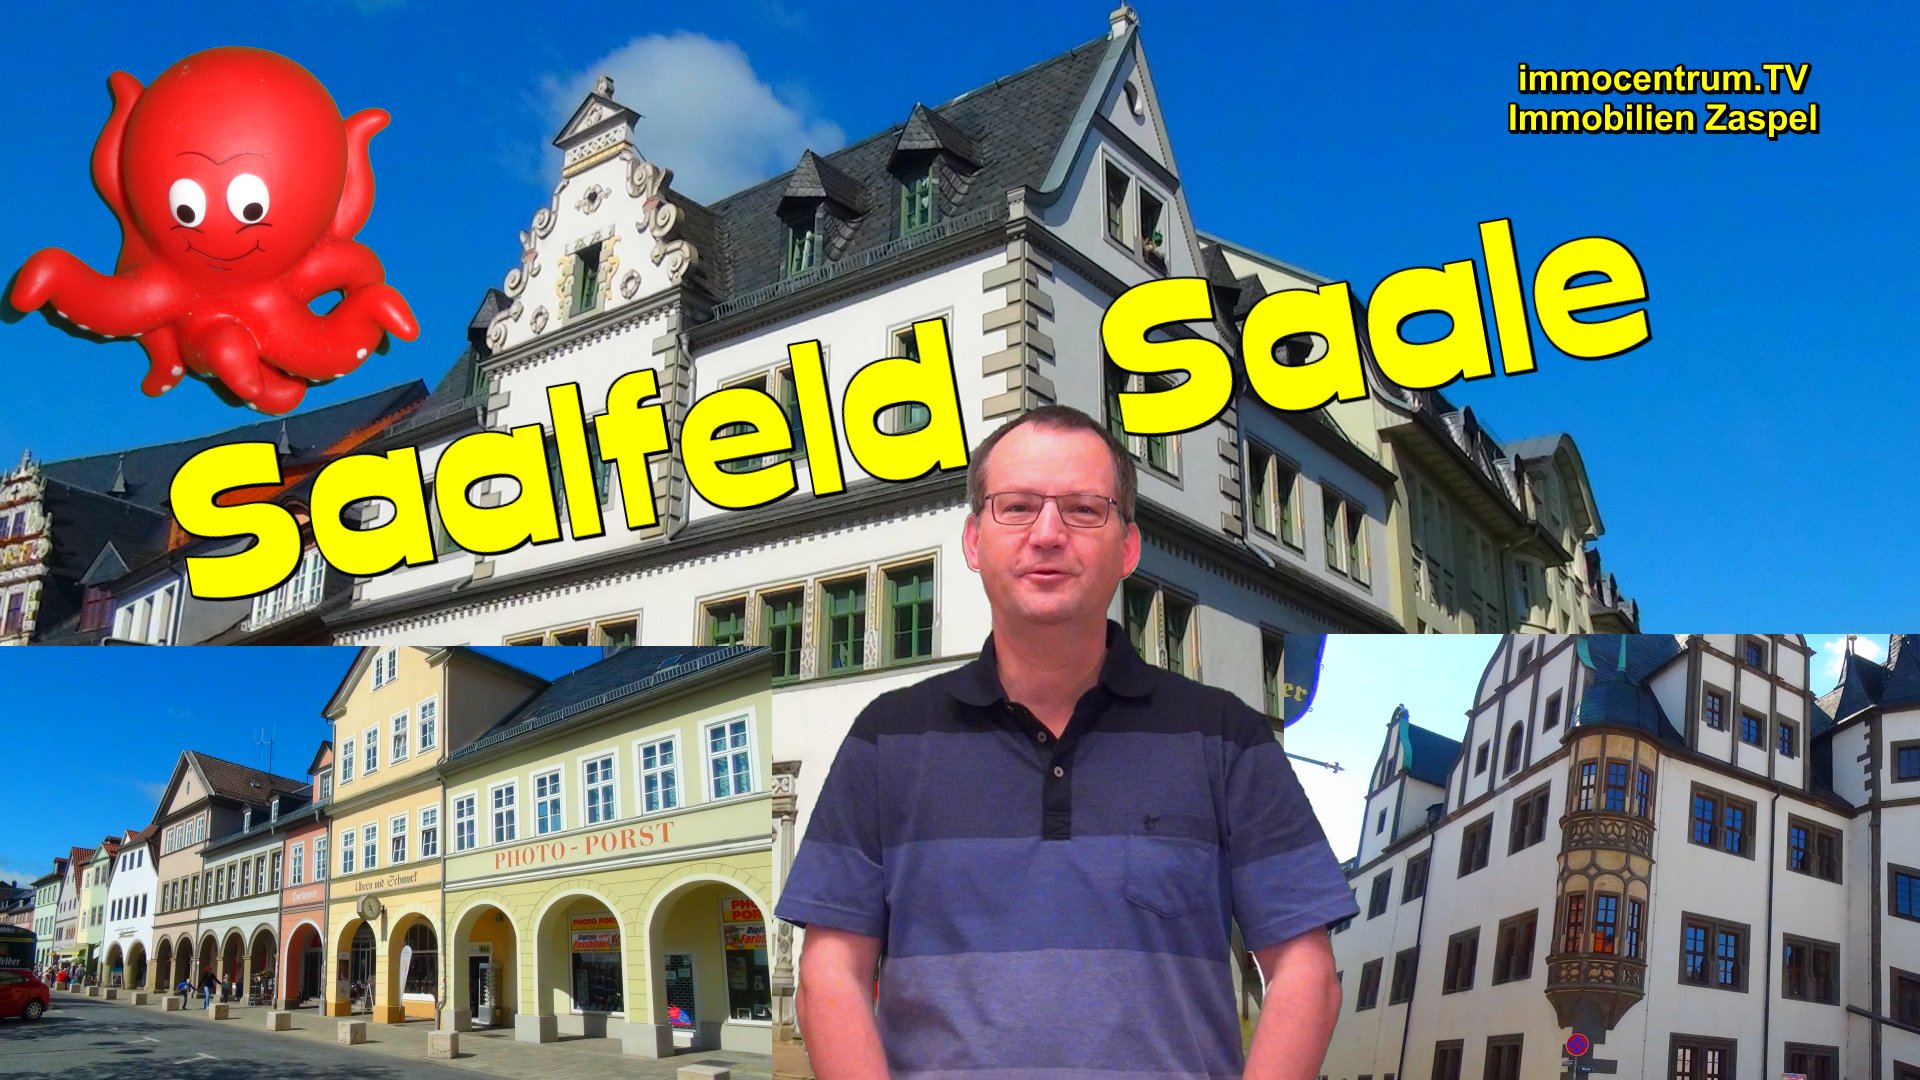 Saalfeld Saale